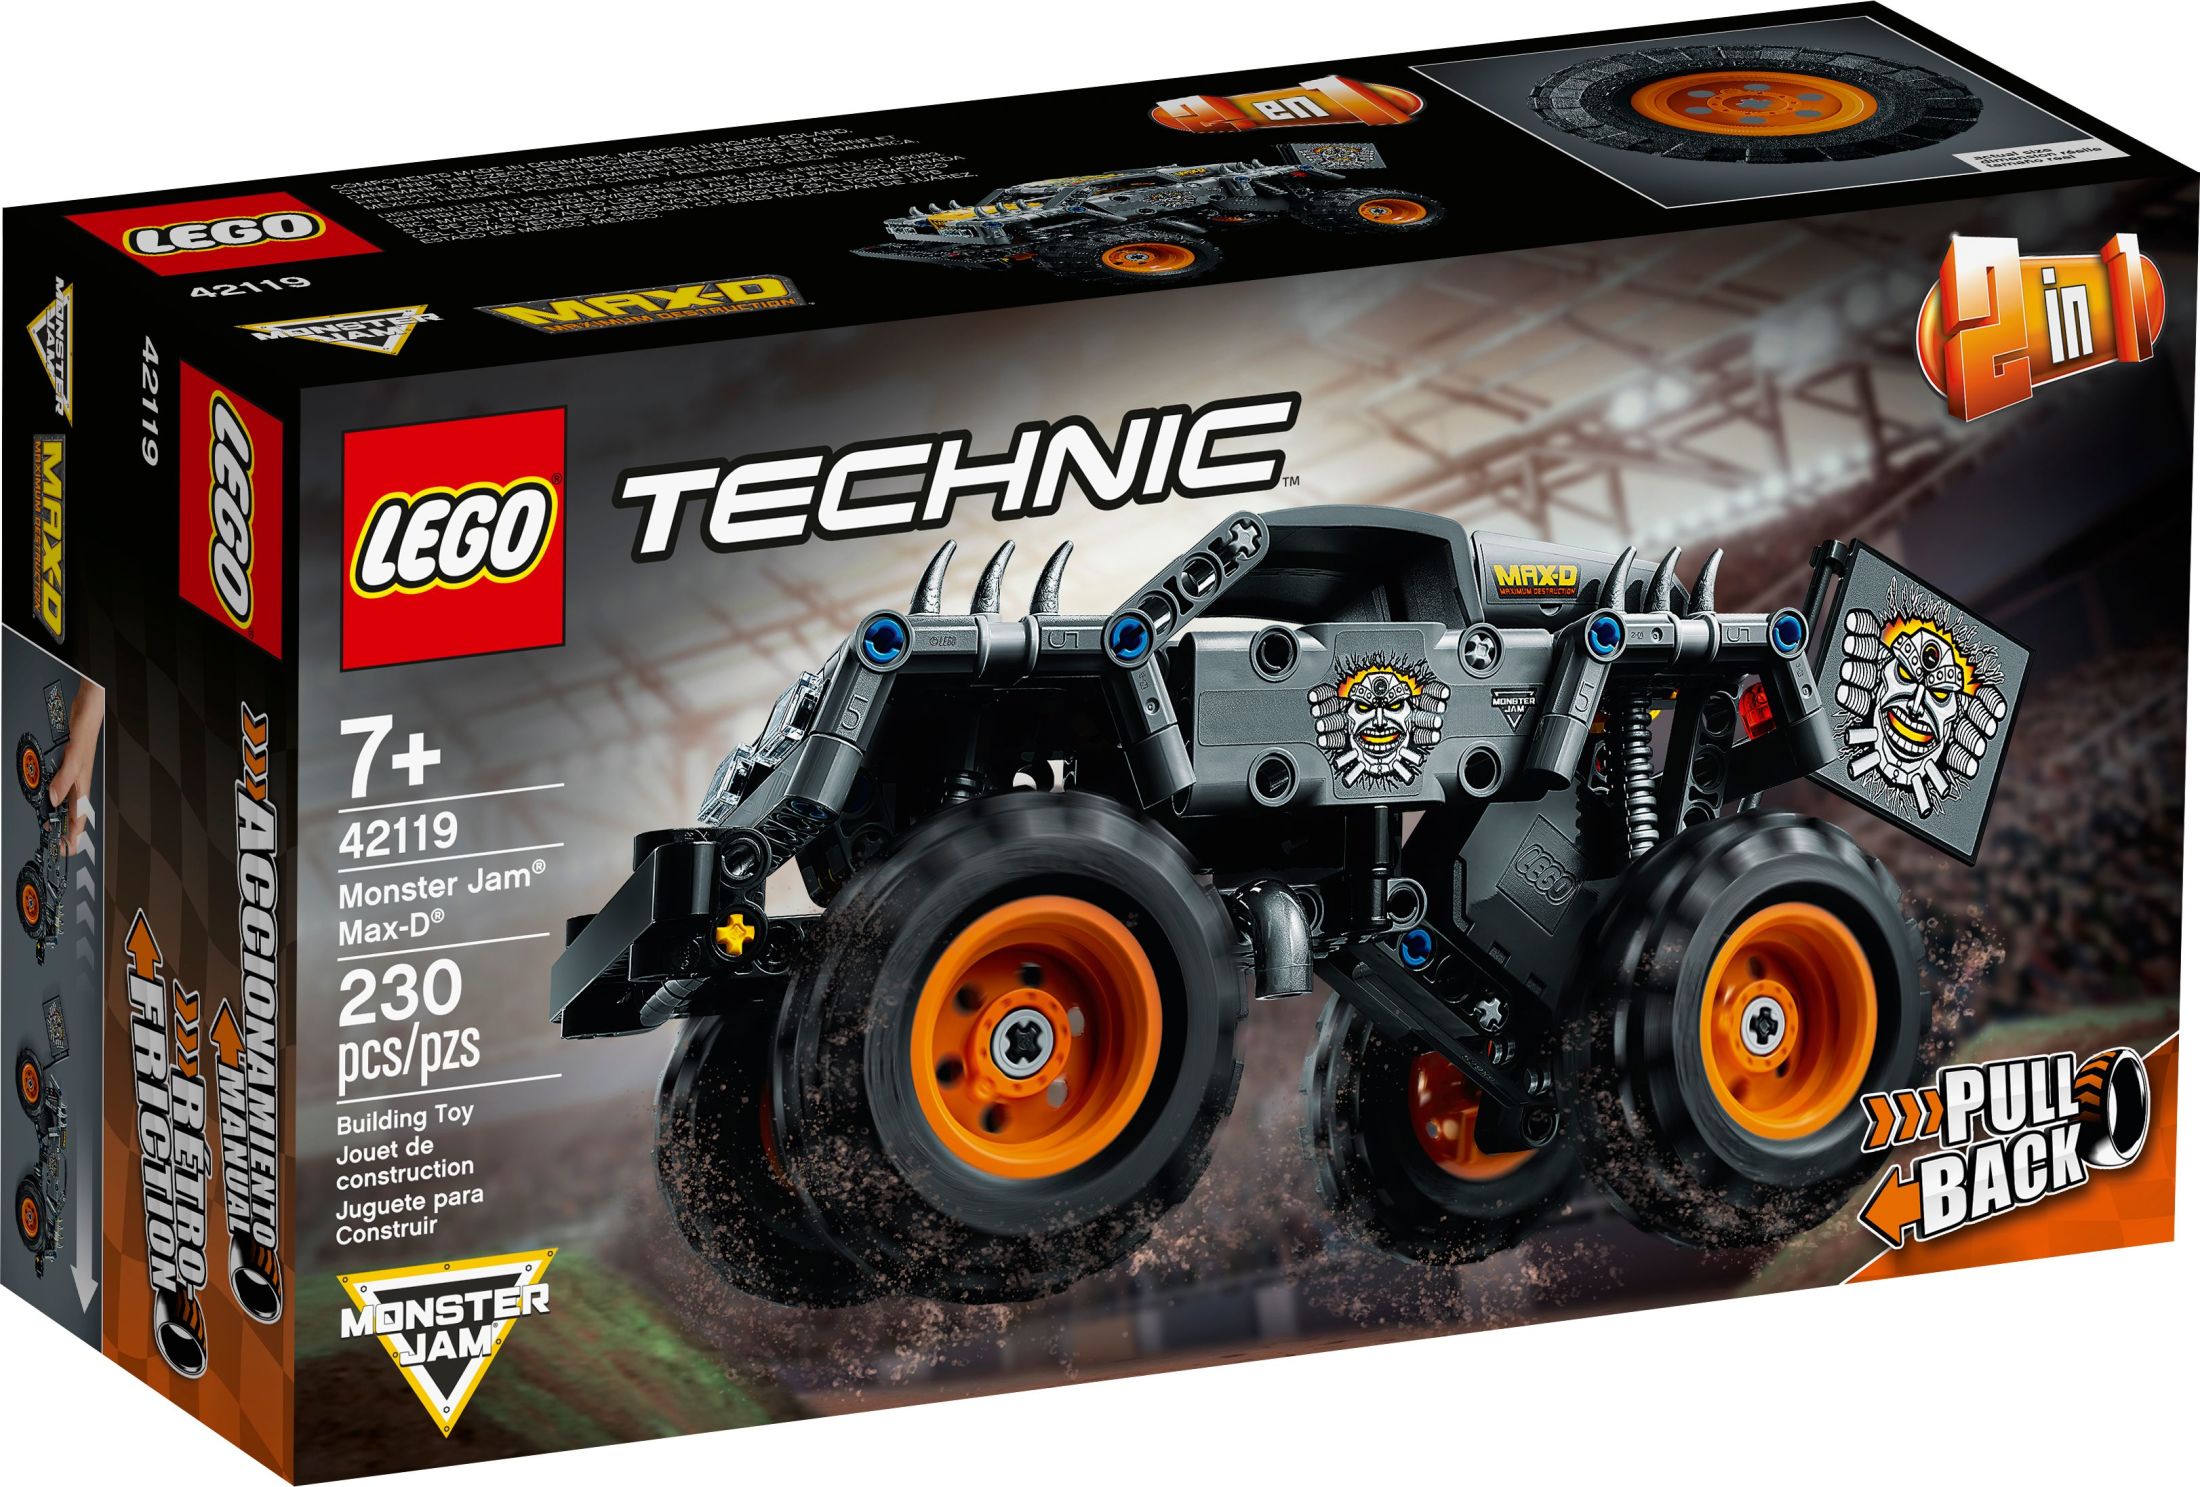 LEGO Technic Monster Jam Max-D 42119 Model Kit for Kids Who Love Monster Trucks (230 Pieces) - image 3 of 8